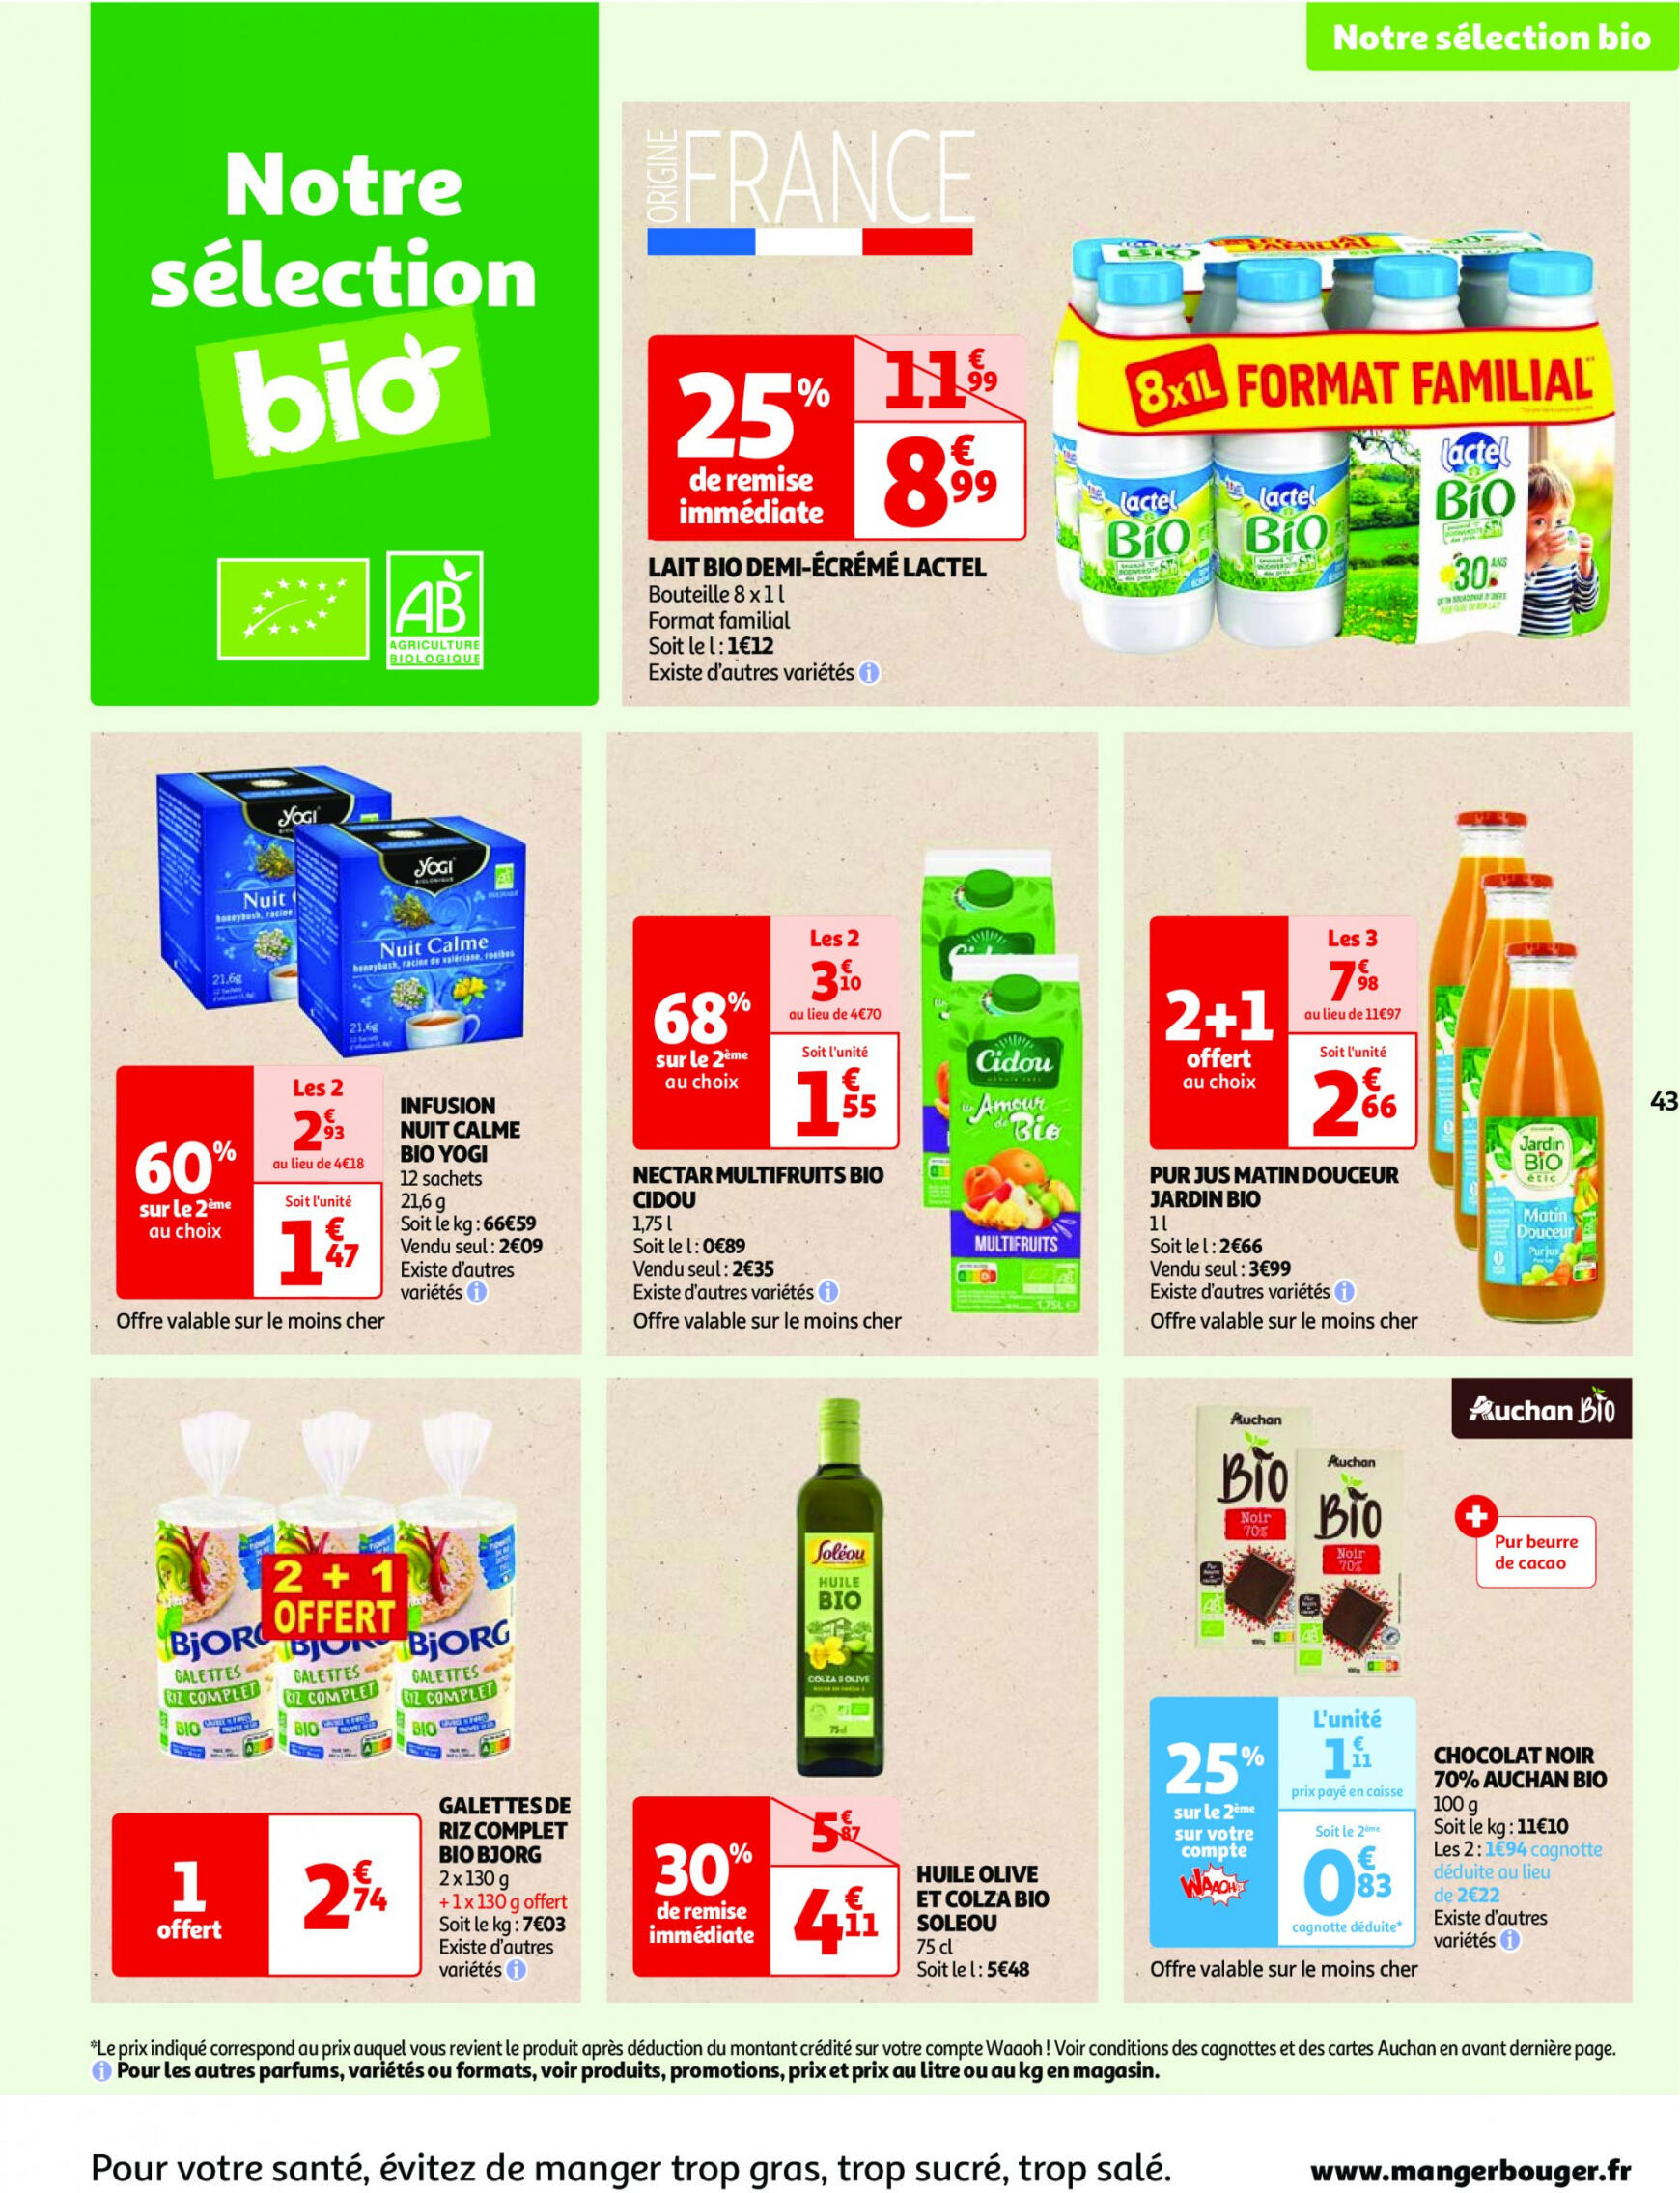 auchan - Prospectus Auchan actuel 30.04. - 06.05. - page: 43